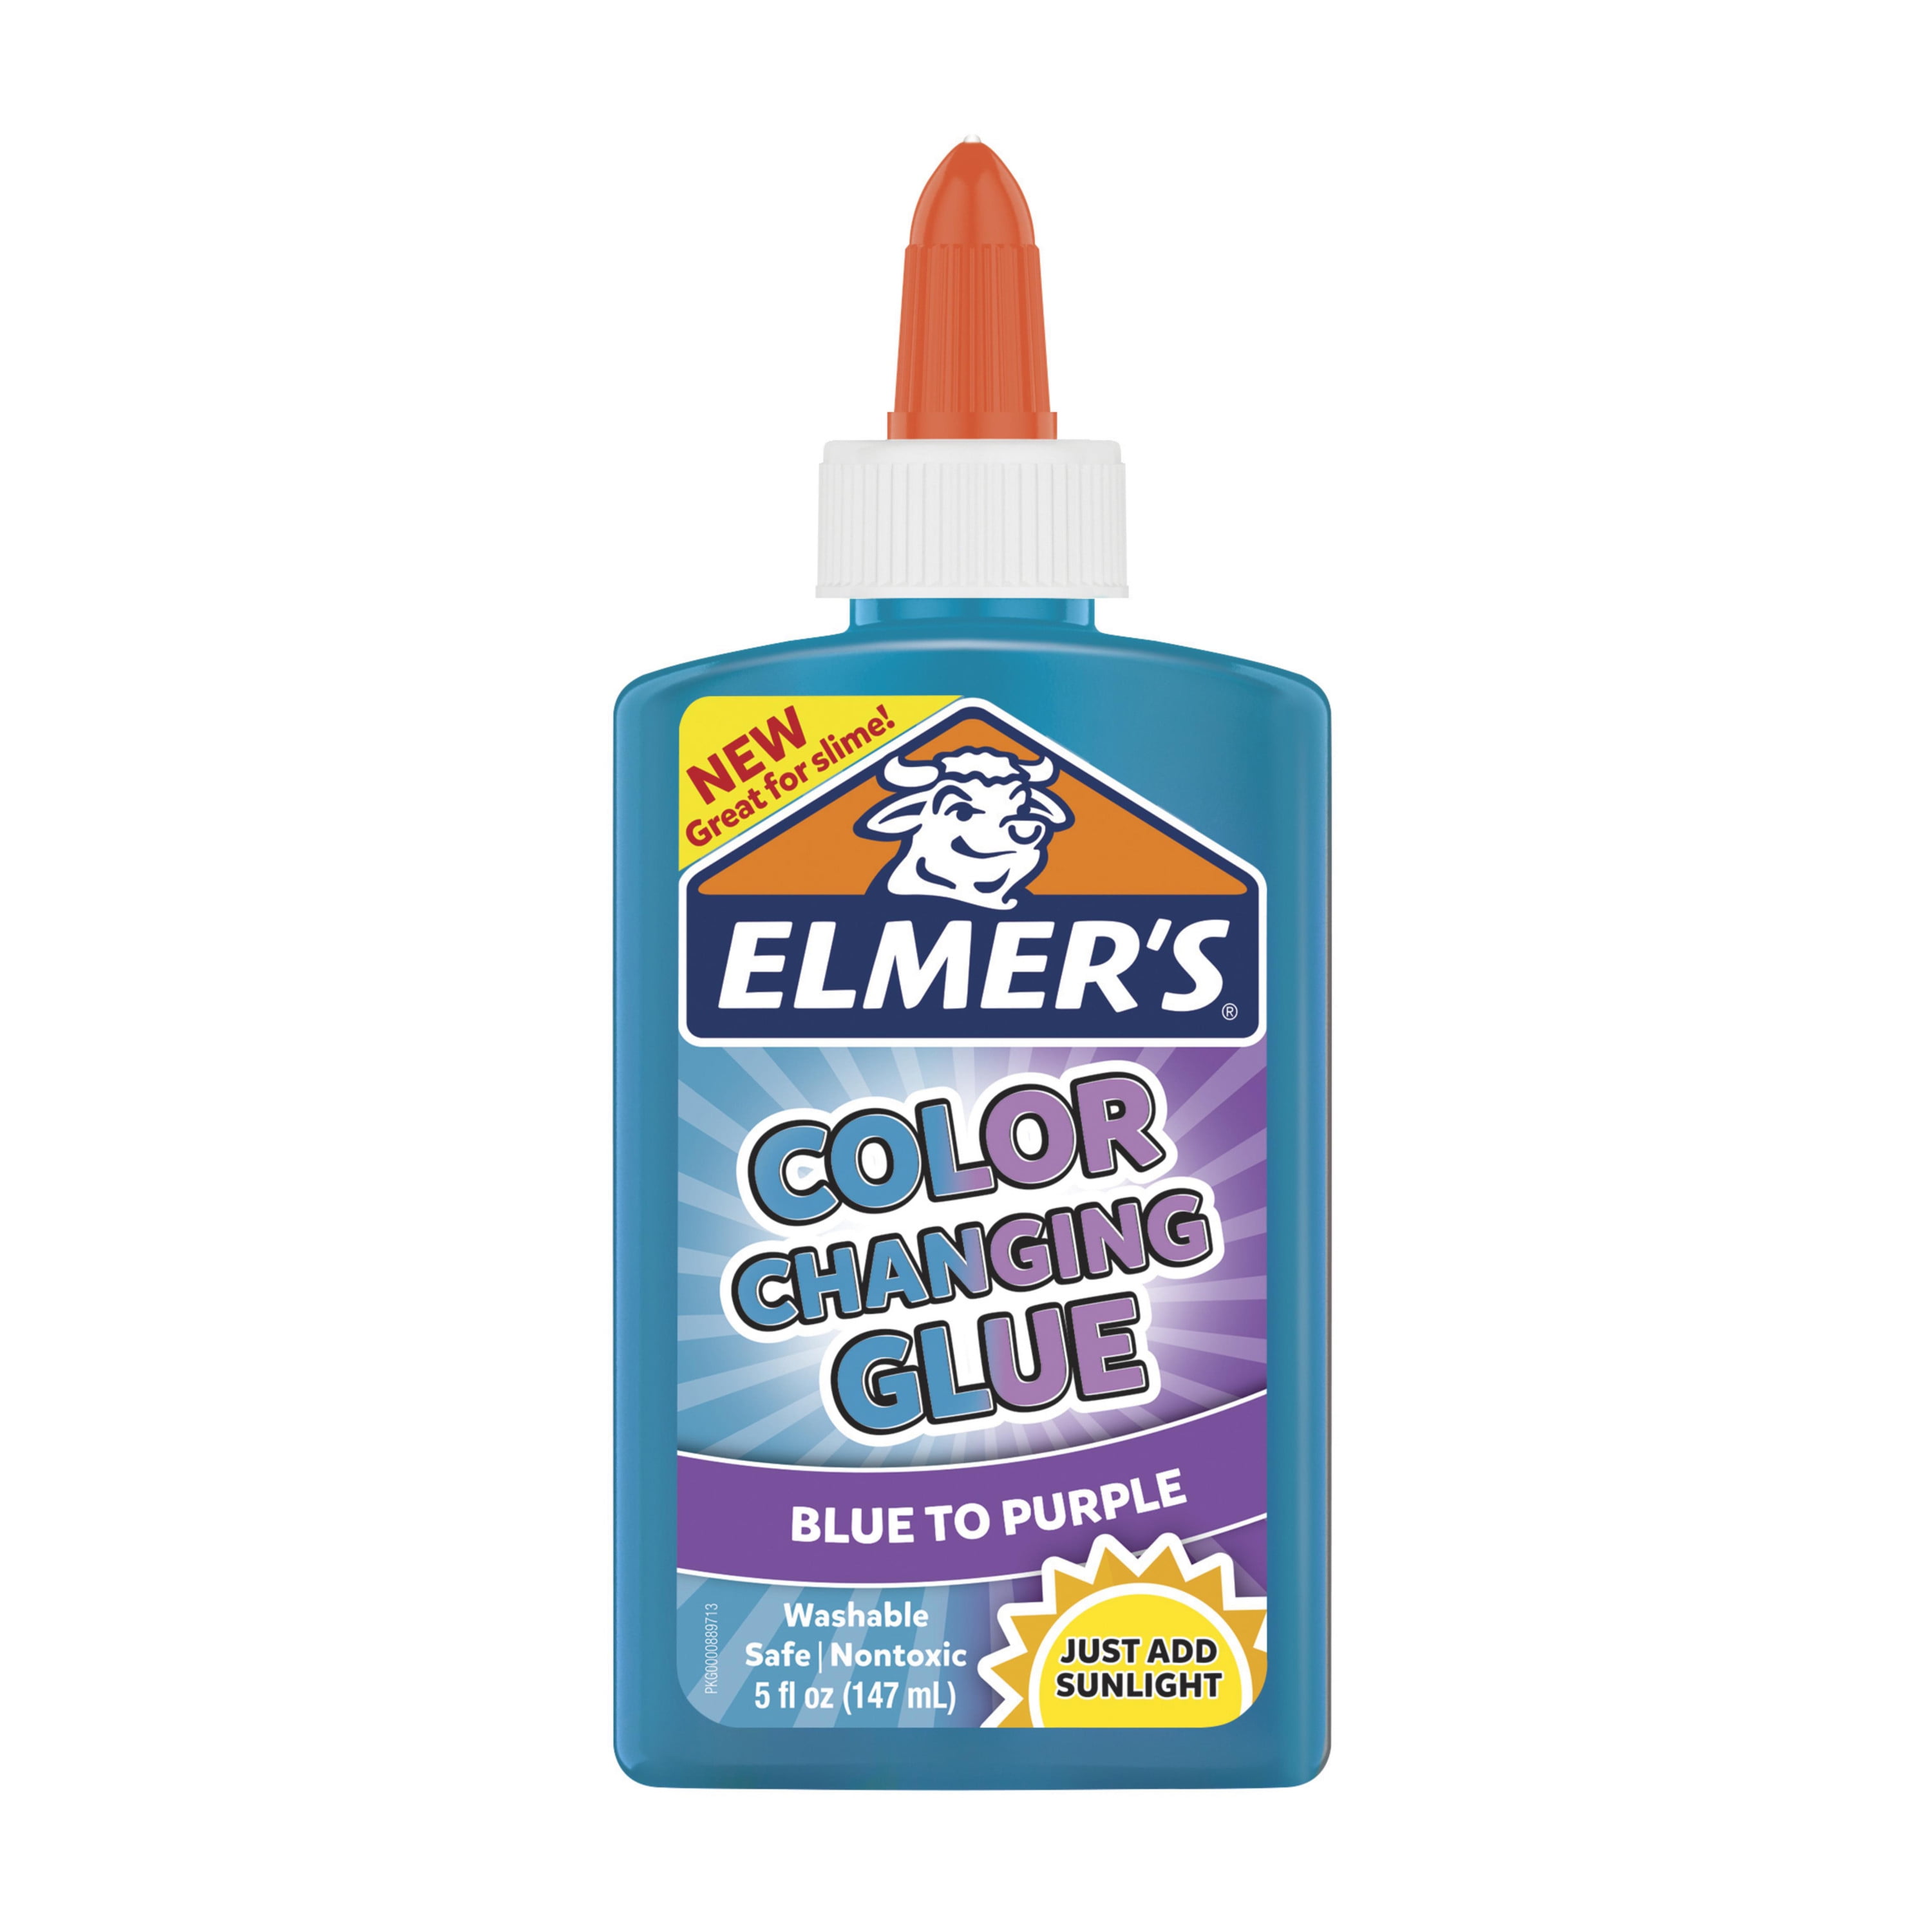 Elmers Glue Mermaid Slime Recipe {An Easy Summer Kids Craft}DIY Crafts